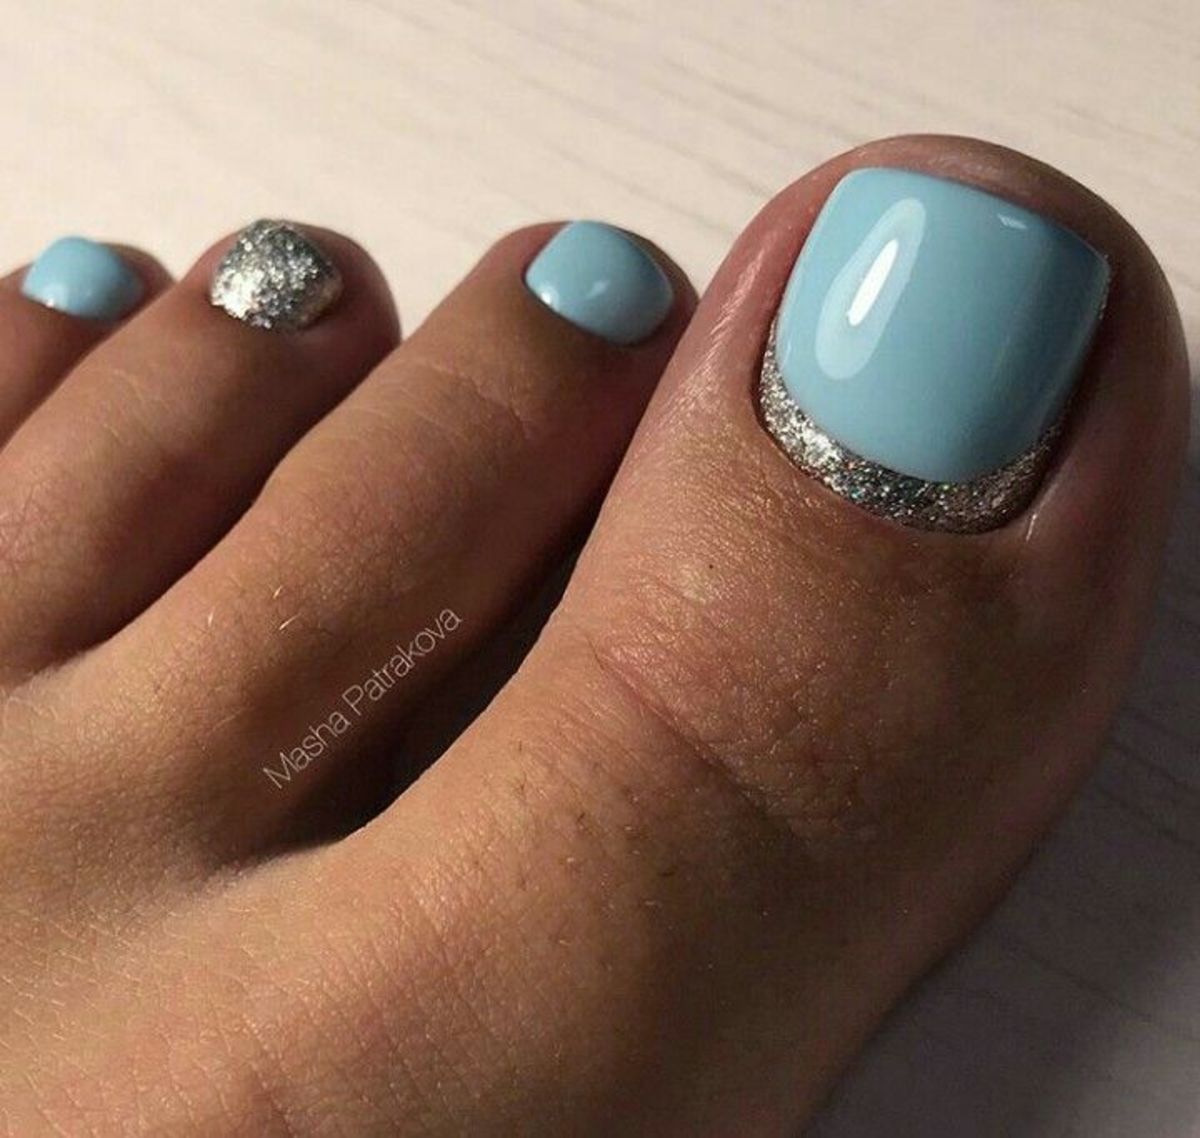 summer-toe-nail-designs